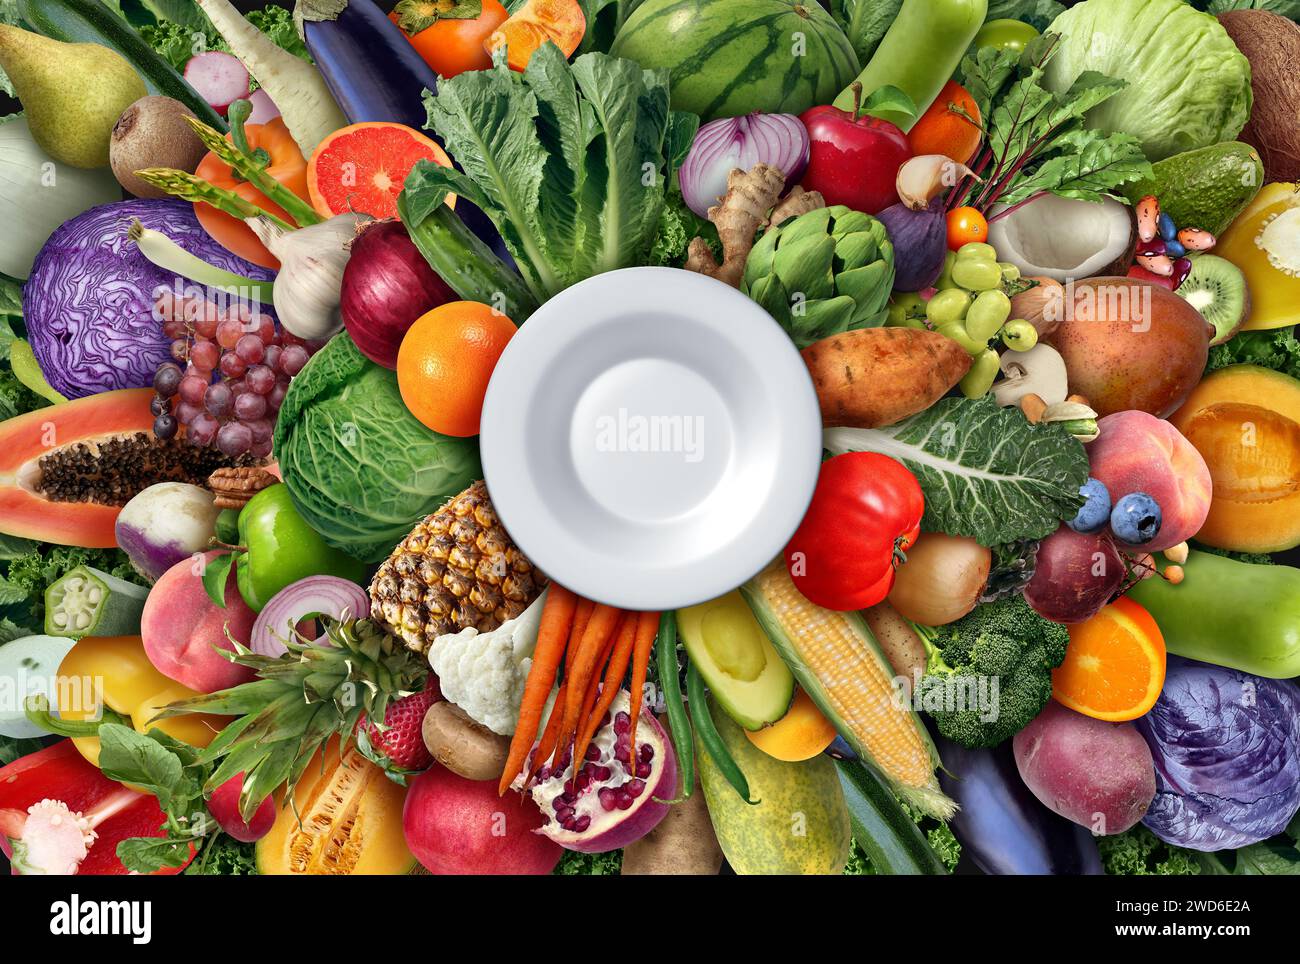 Mangiare Una dieta sana come simbolo nutrizionale di una scelta dietetica a base vegetale con un piatto vuoto per mangiare cibi ad alto contenuto nutriente come verdure frutta legumi Foto Stock